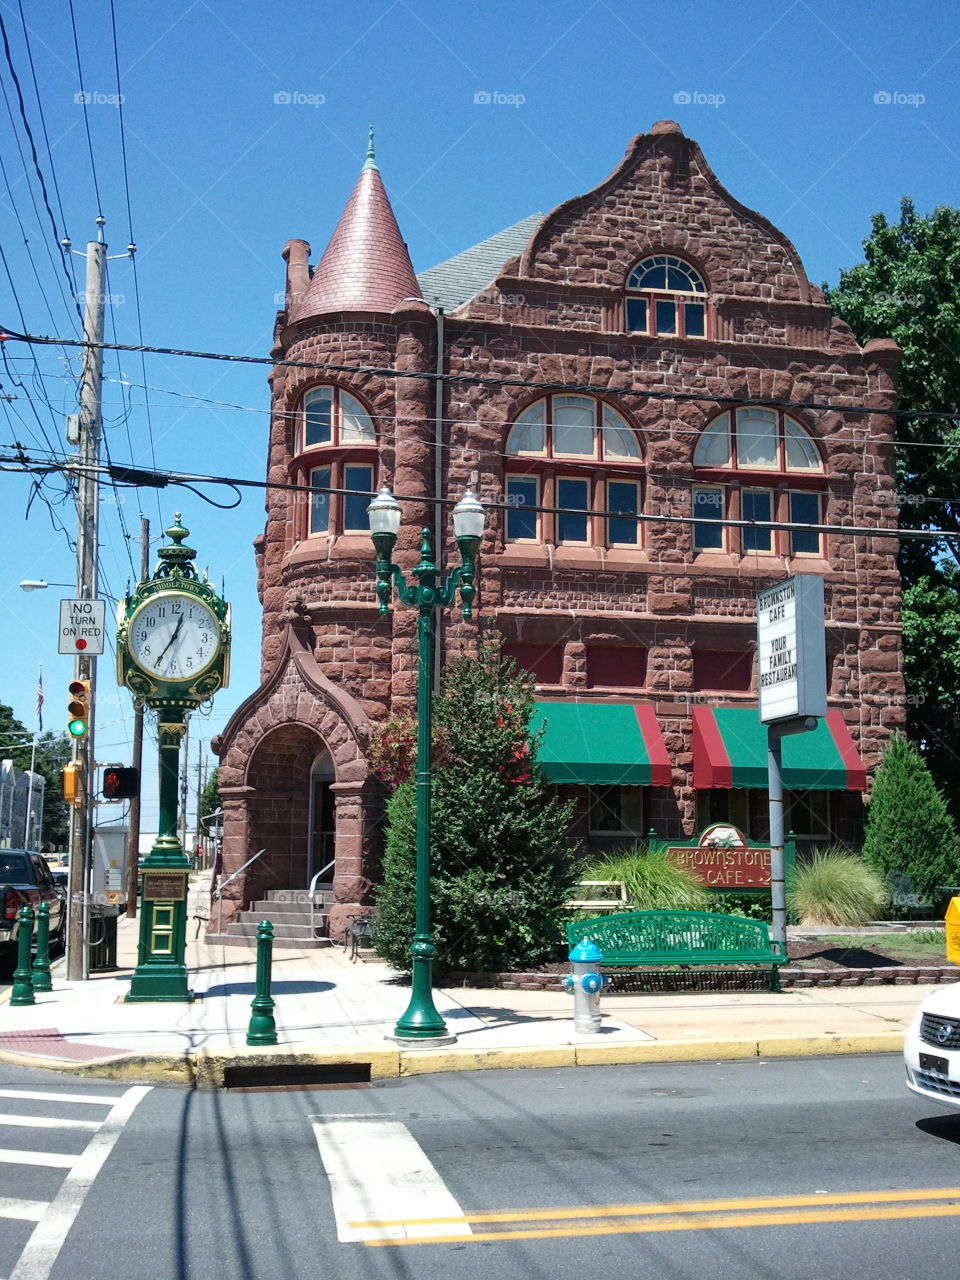 historic architecture in small town America